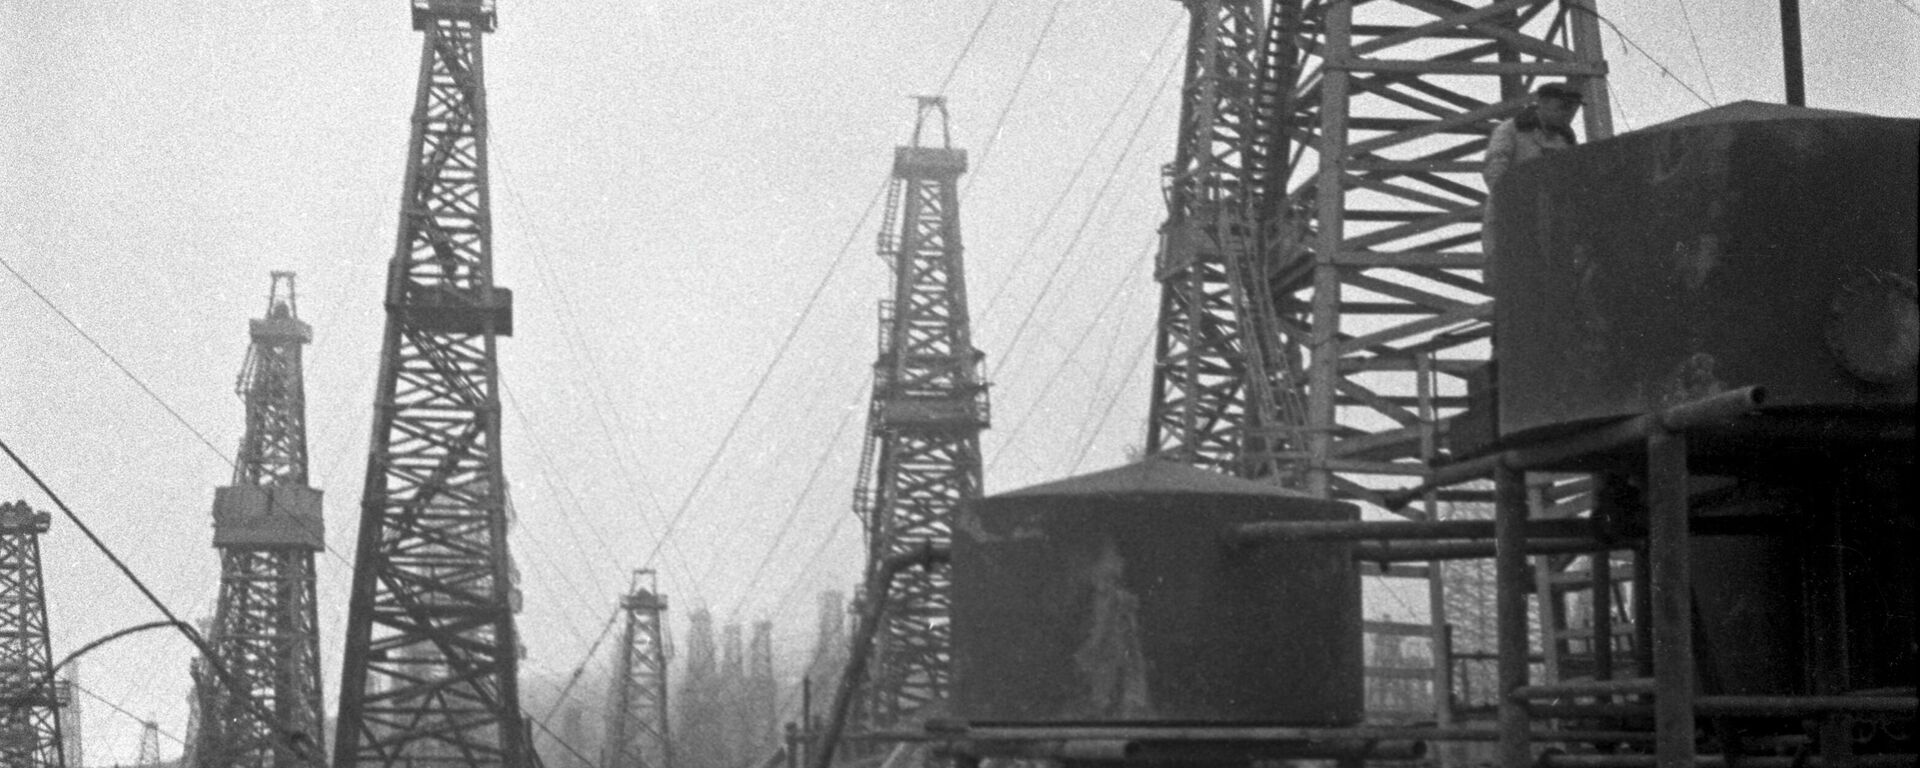 Naftas ieguve Baku. 1939. gads - Sputnik Latvija, 1920, 22.07.2021